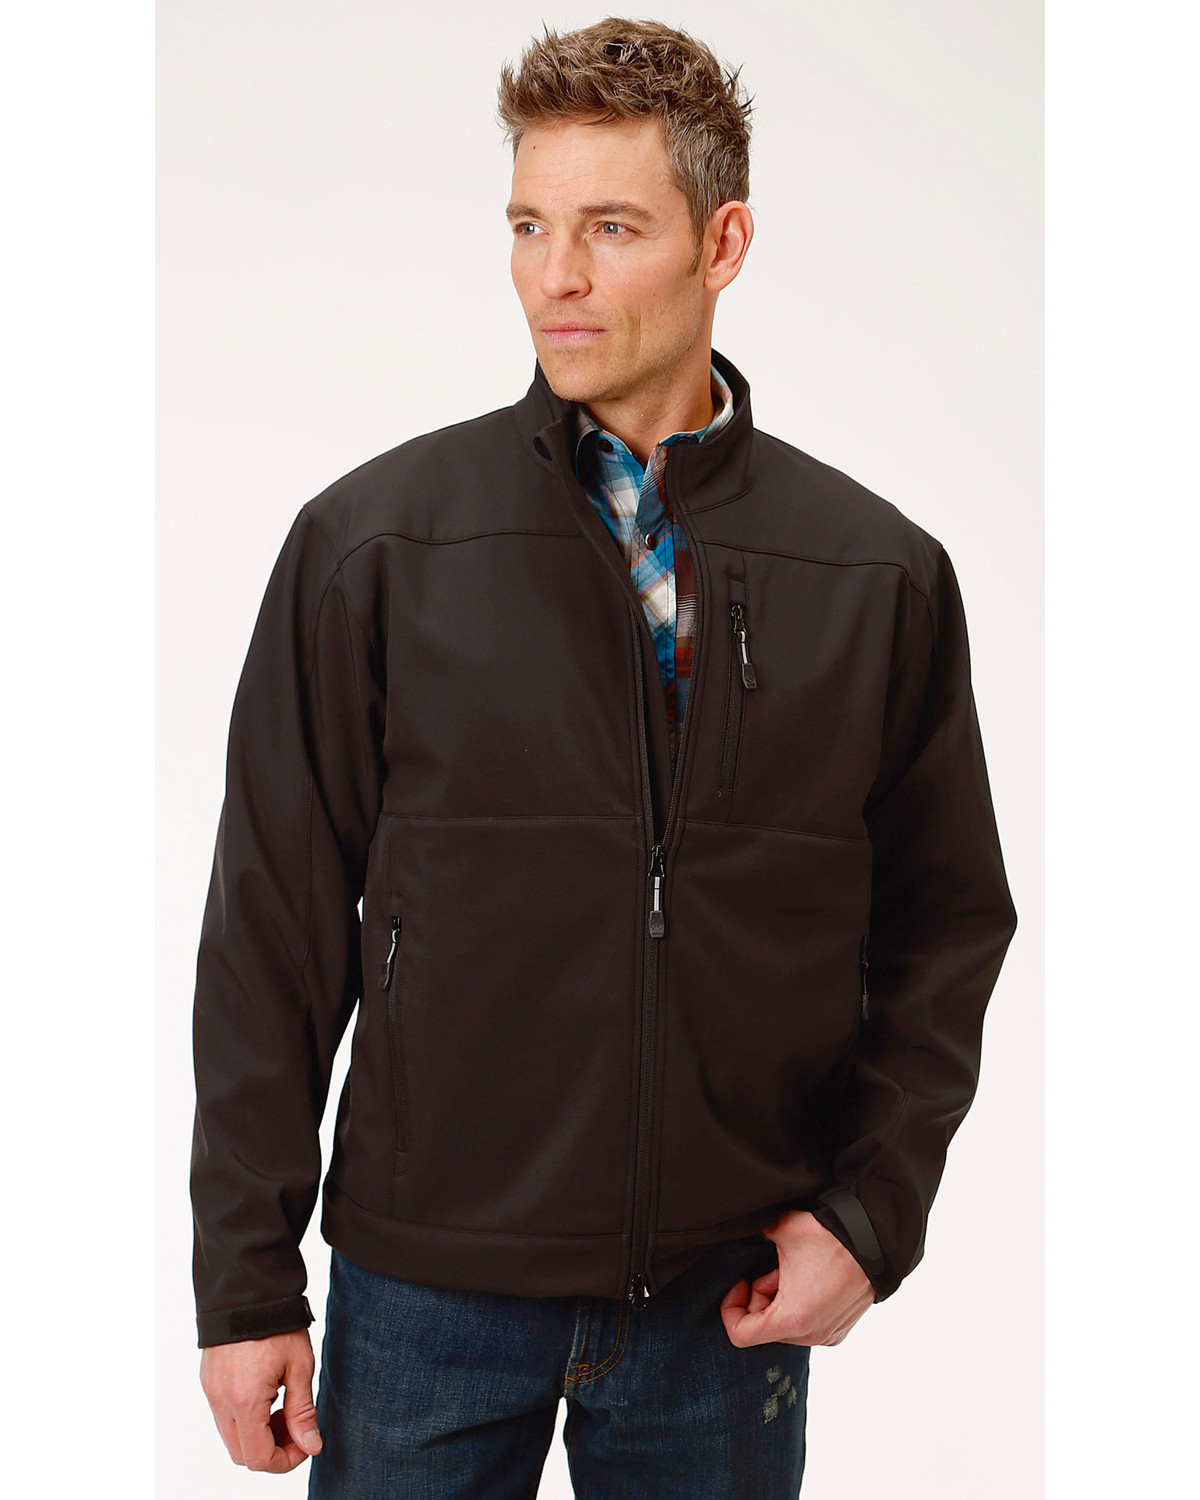 Roper Men's Concealed Carry Softshell Jacket